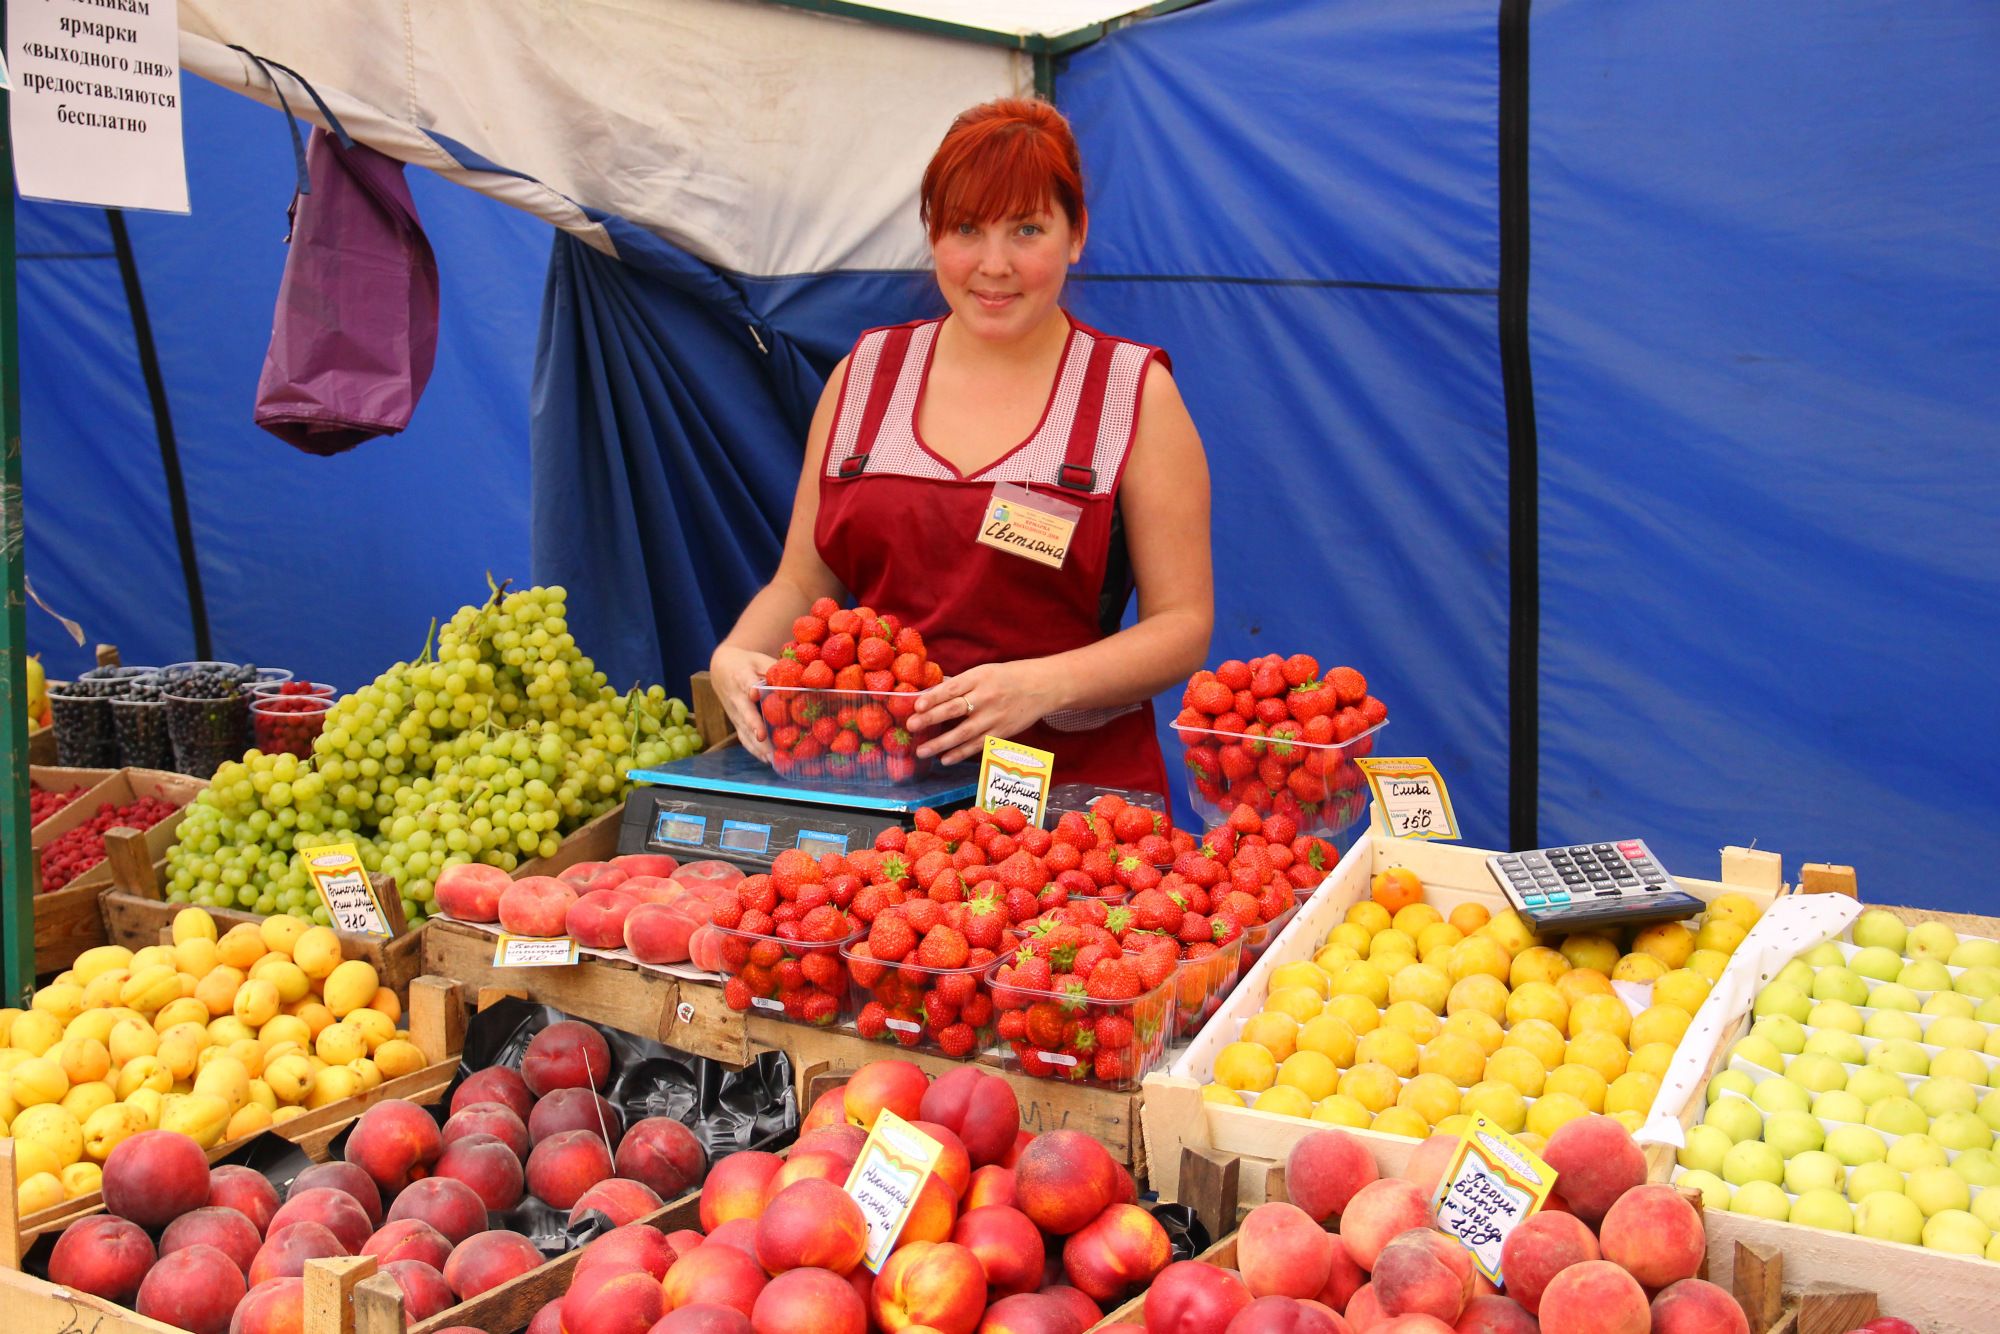 Москва продавец фруктов. Фрукты на рынке. Торговля овощами и фруктами. Продавец фруктов на рынке. Ягоды на рынке.